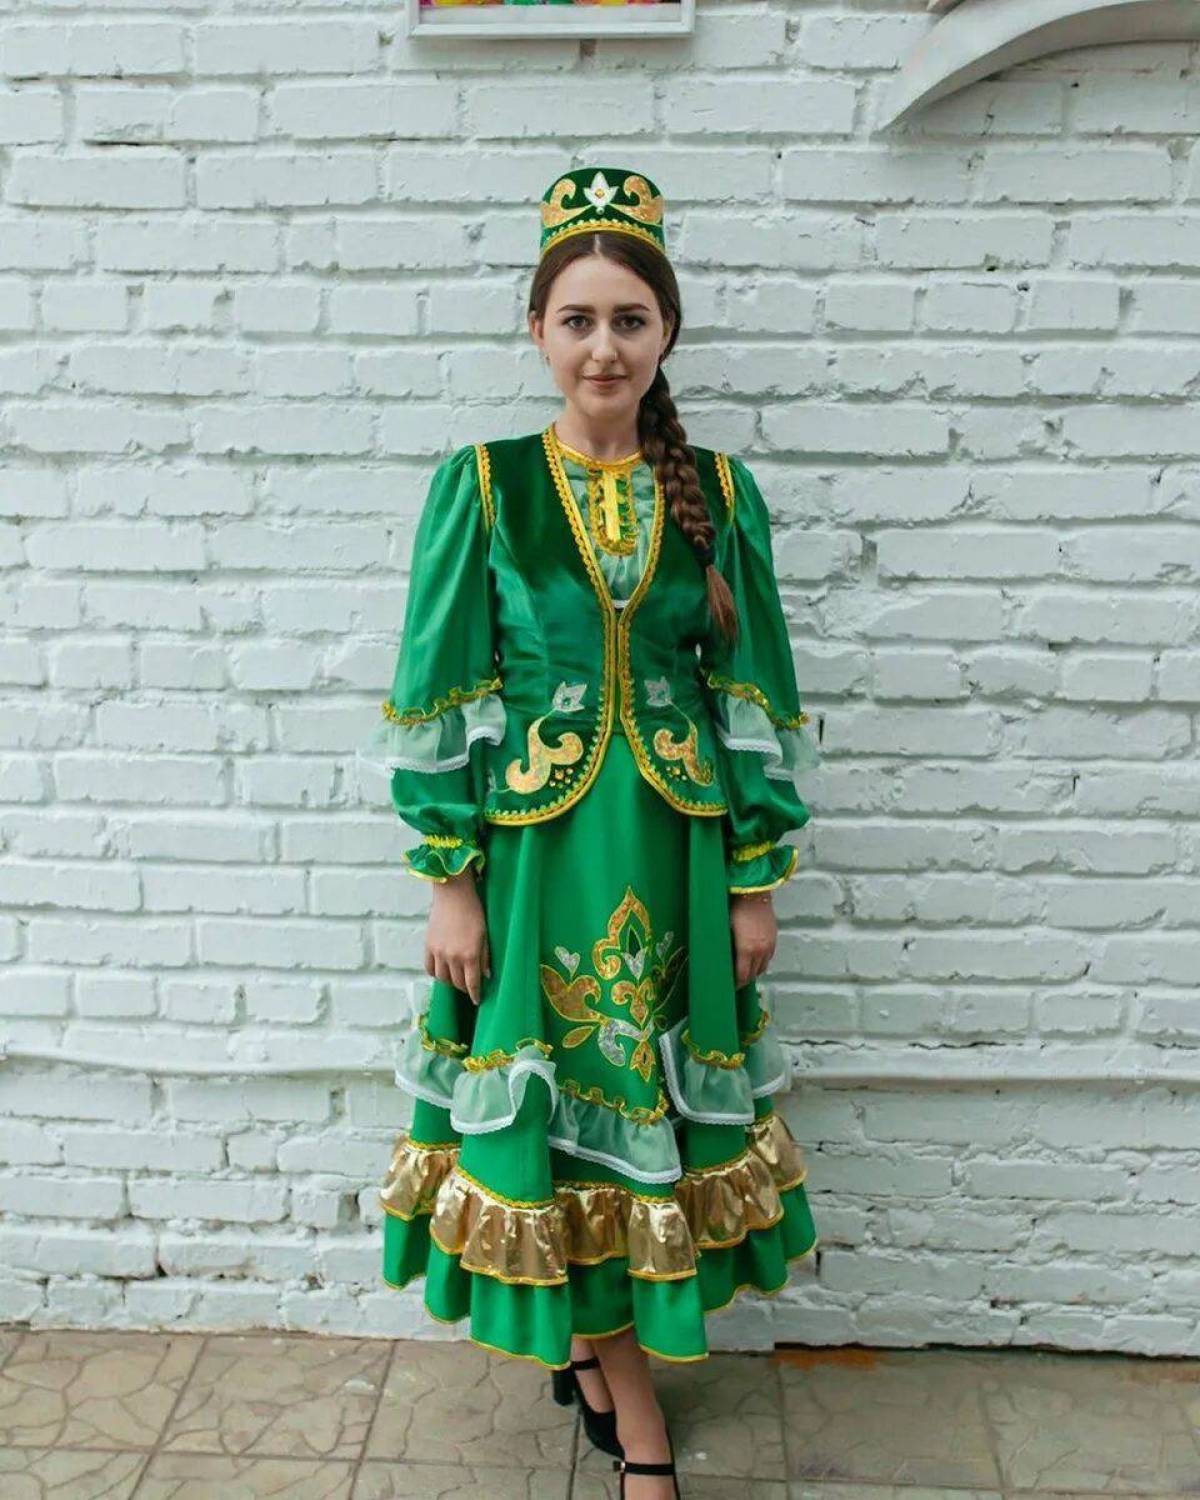 Татарское национальное платье